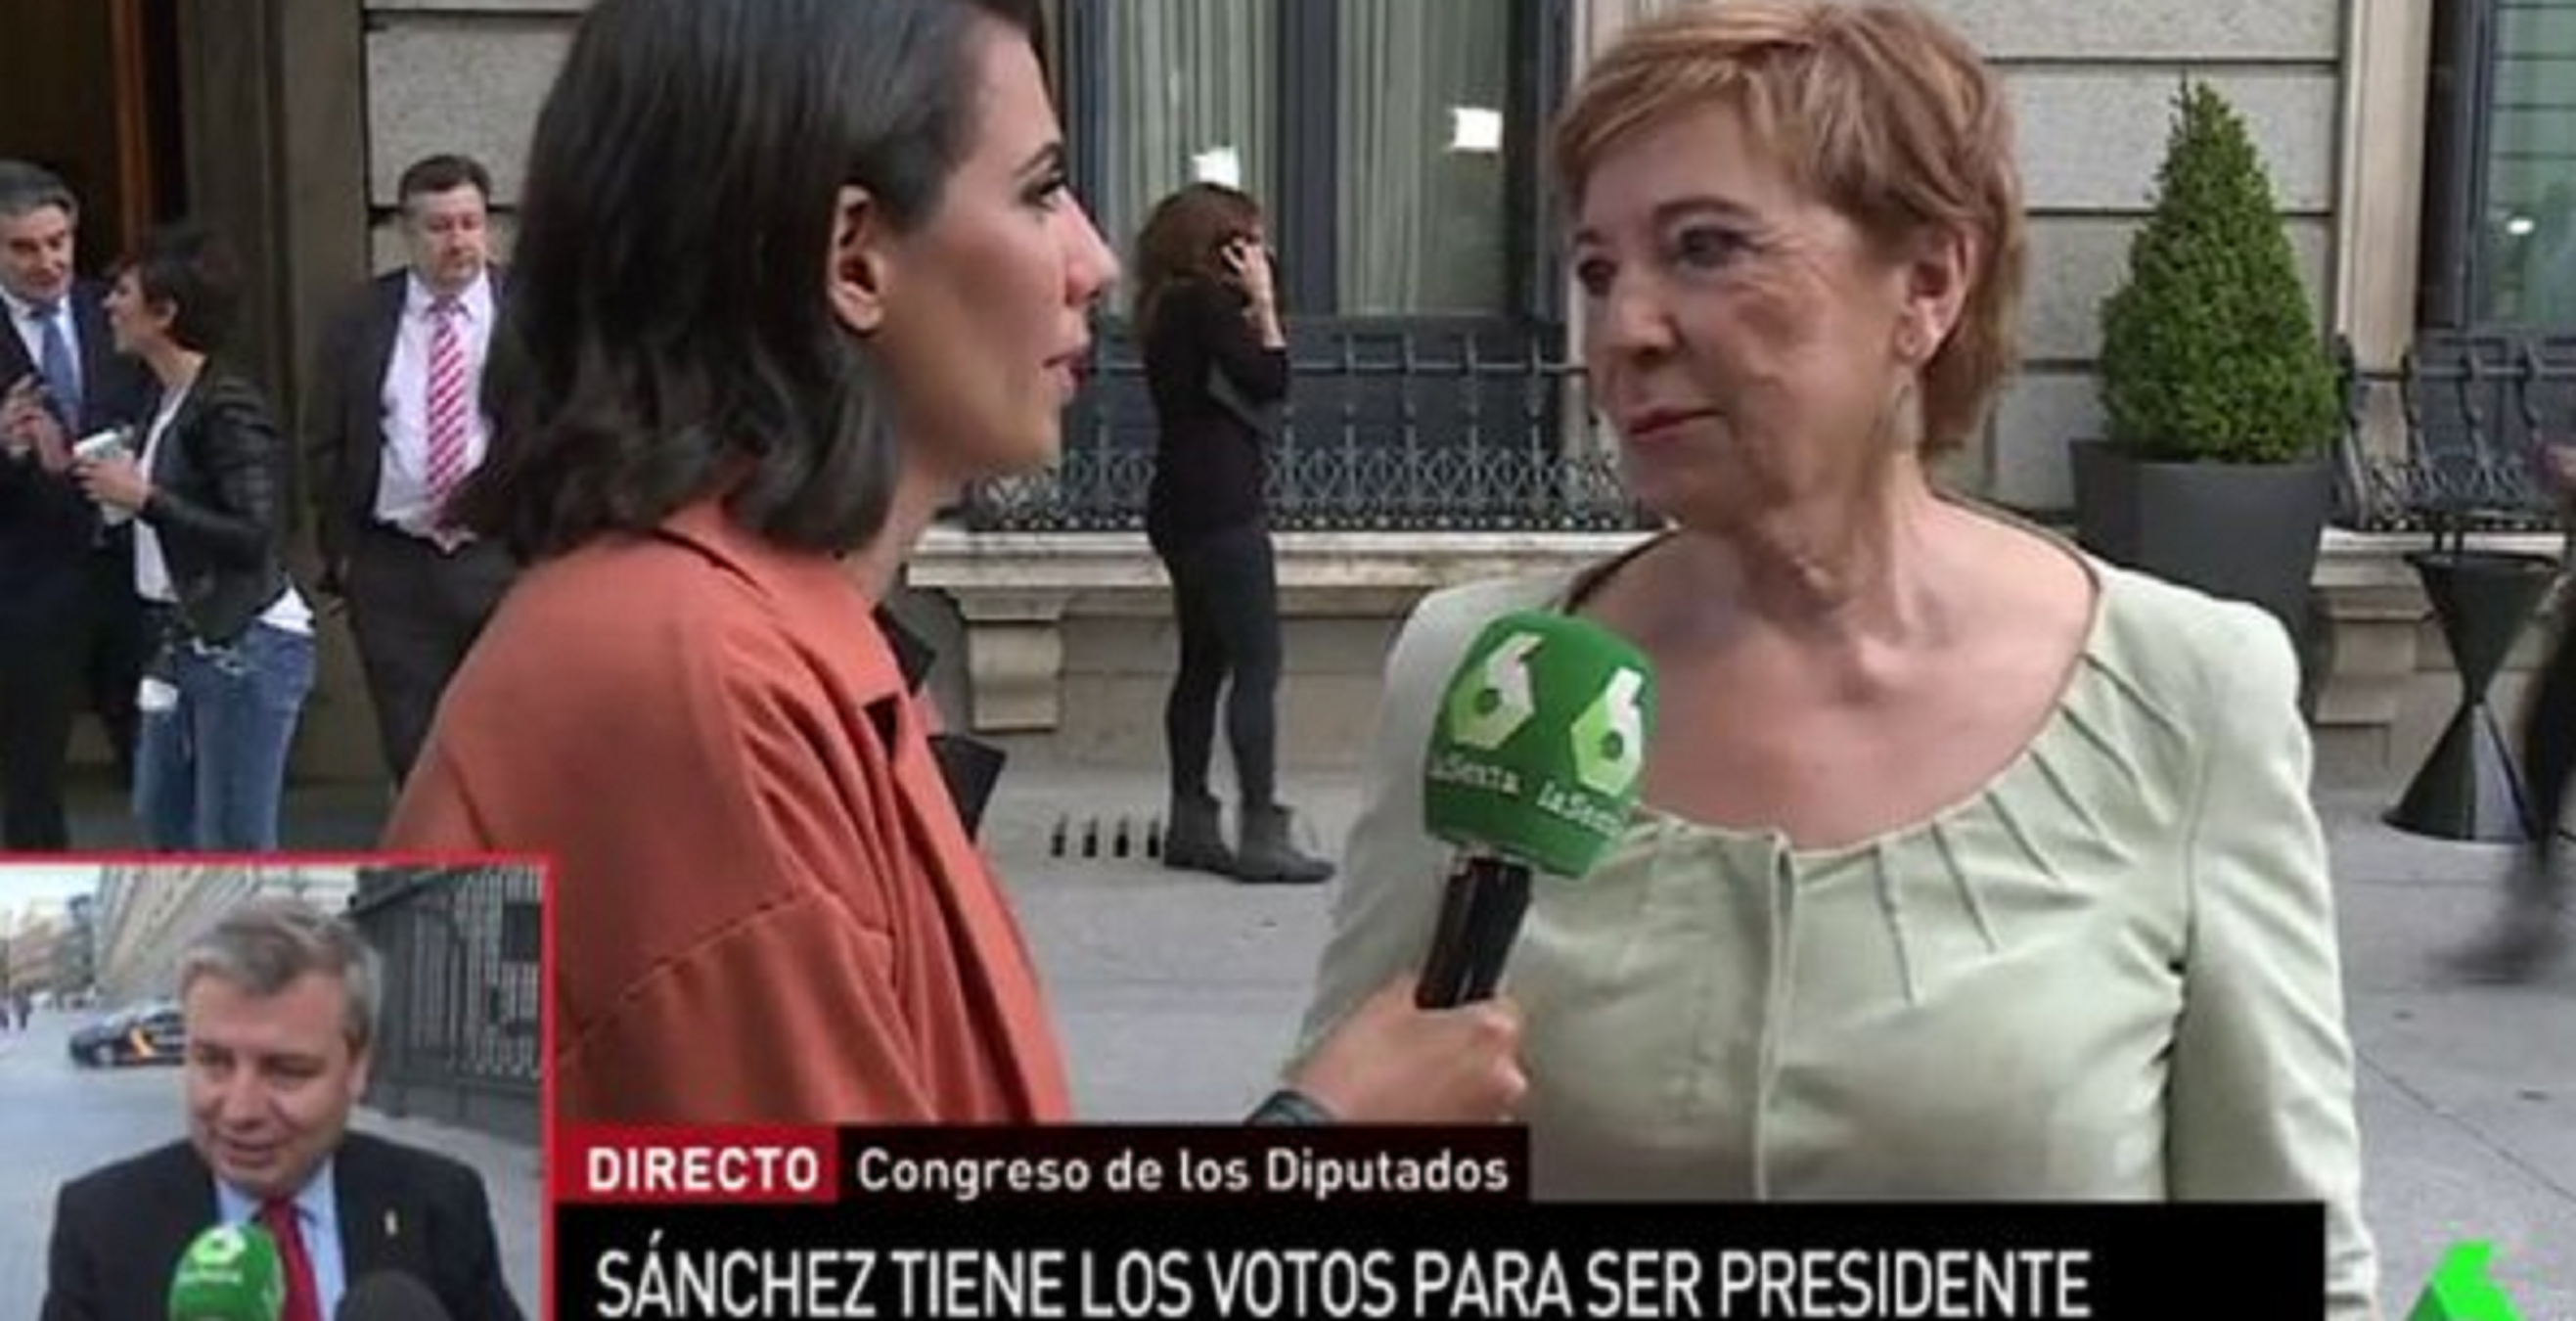 Celia Villalobos perd els papers a La Sexta: "Le dais caña al PP to'l puto día"